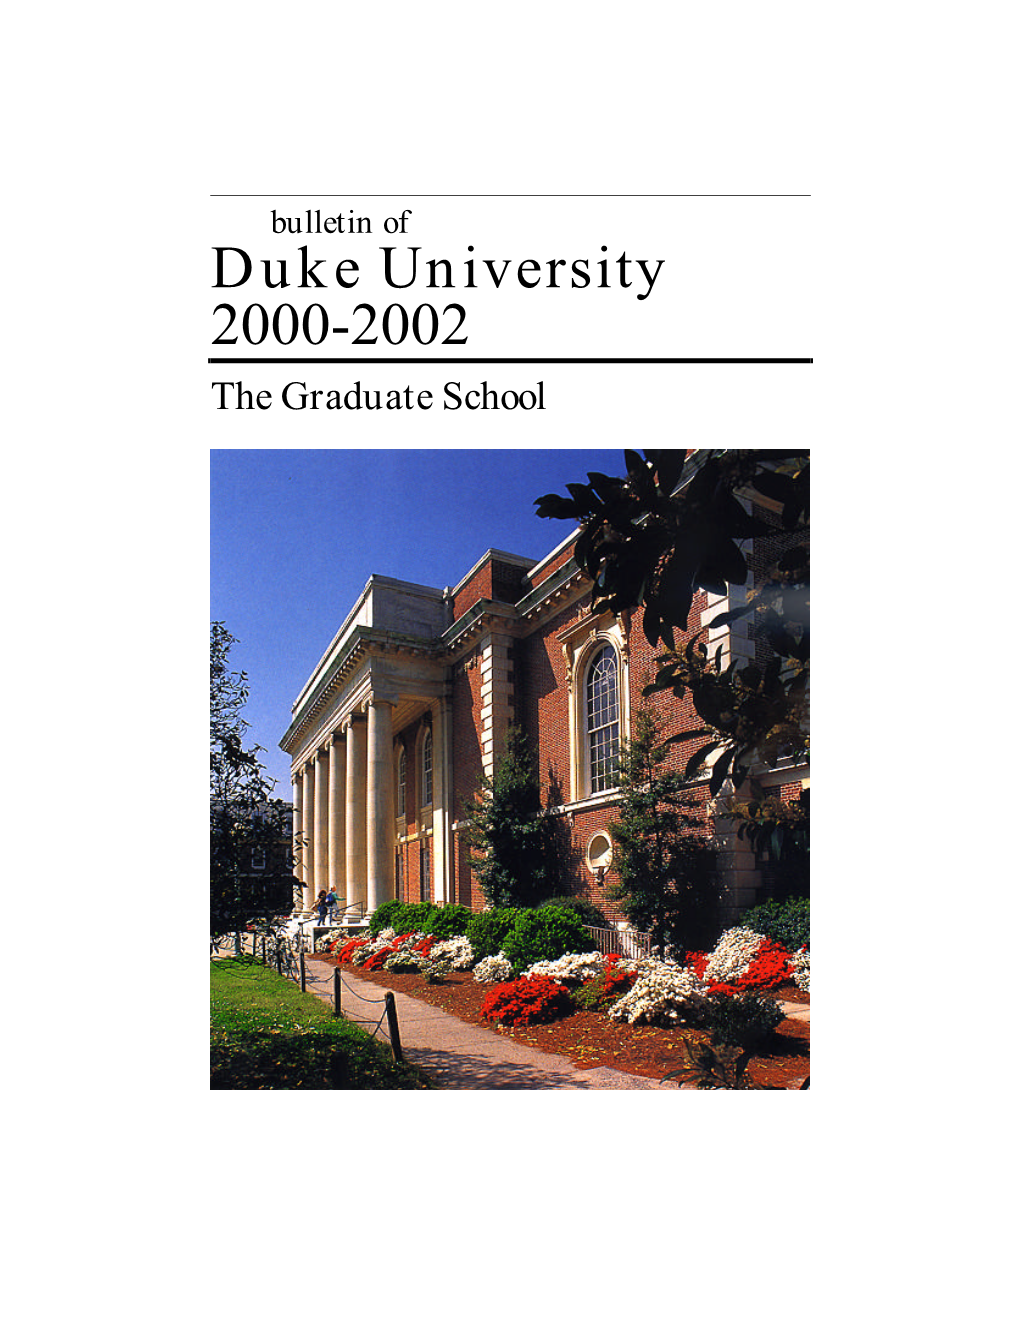 Duke University 2000-2002